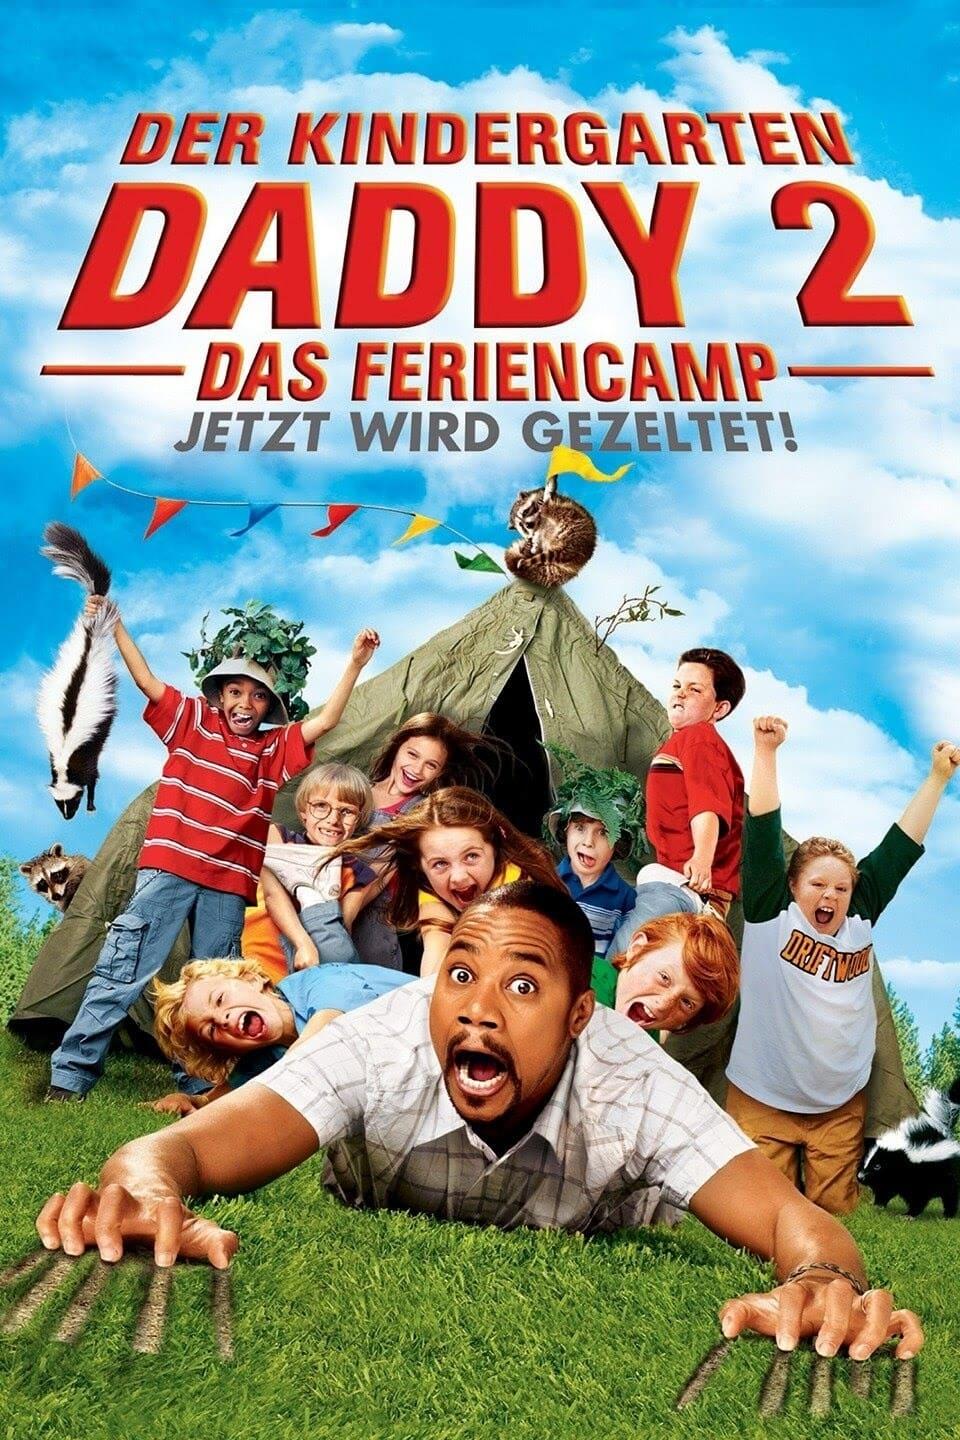 Der Kindergarten Daddy 2: Das Feriencamp poster